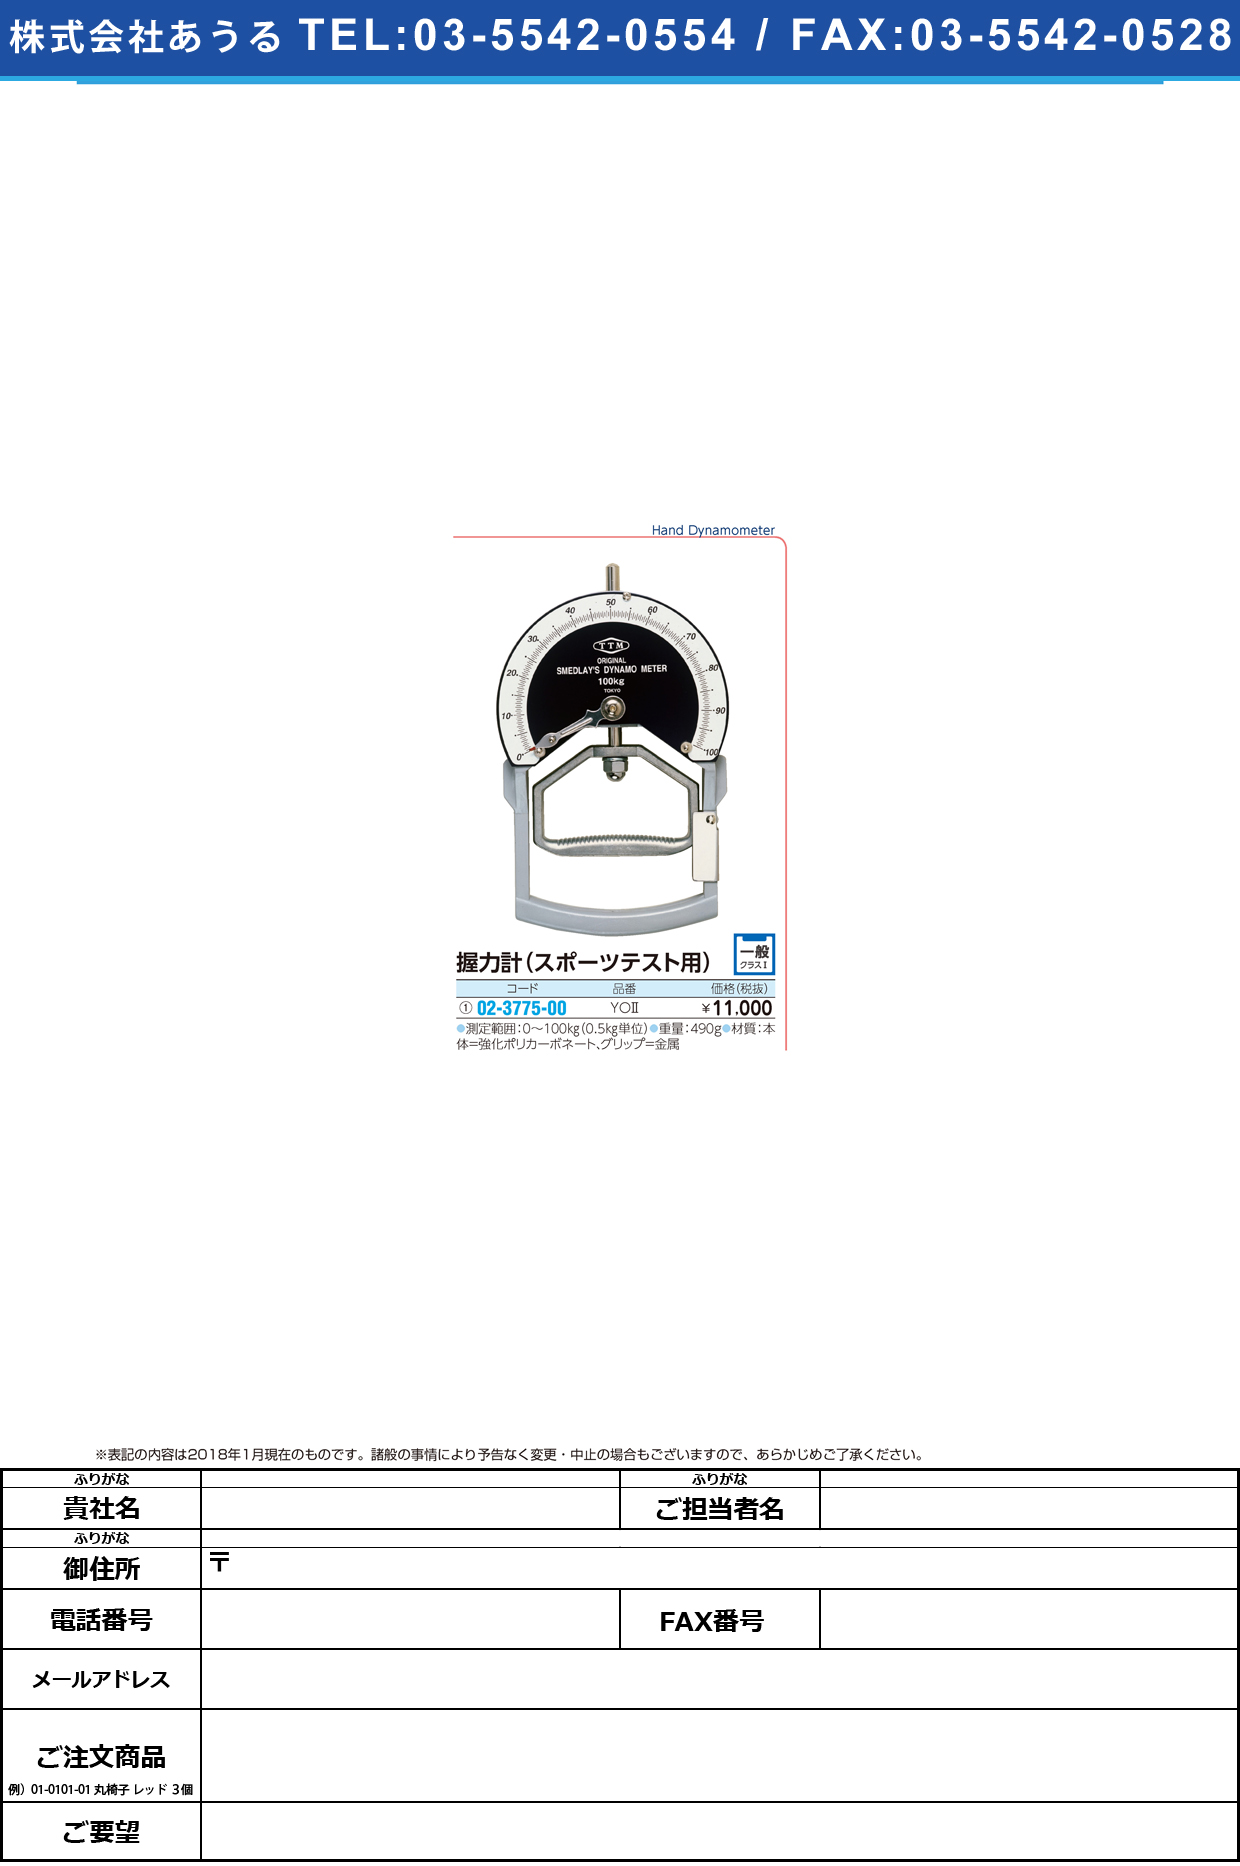 (02-3775-00)握力計（スポーツテスト用） YO2 ｱｸﾘｮｸｹｲ(ｽﾎﾟｰﾂﾃｽﾄﾖｳ)【1台単位】【2018年カタログ商品】